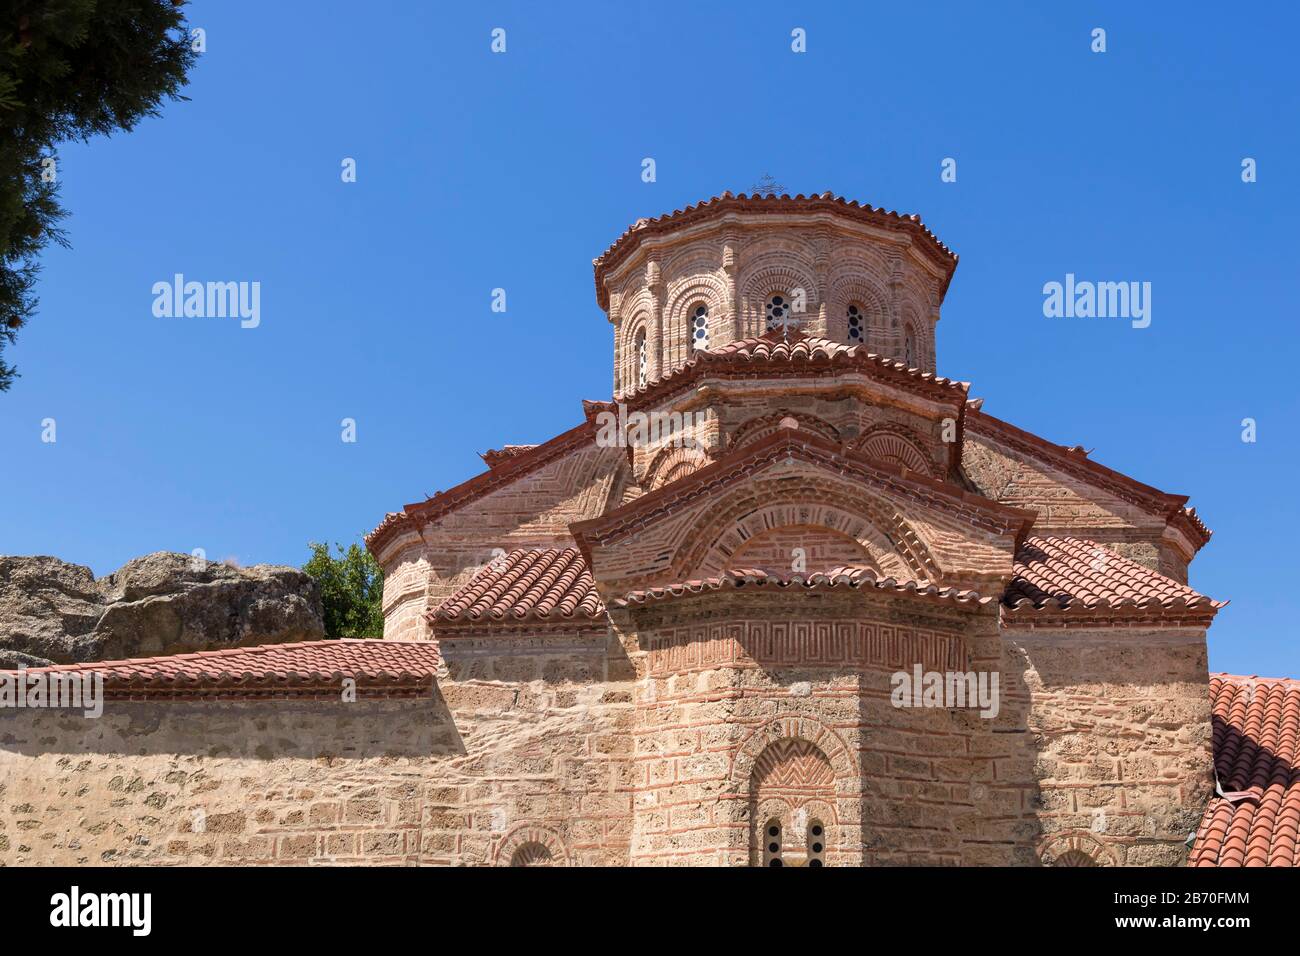 Meteora - i più grandi e famosi complessi di monasteri ortodossi orientali. Bandiera greca. Foto Stock